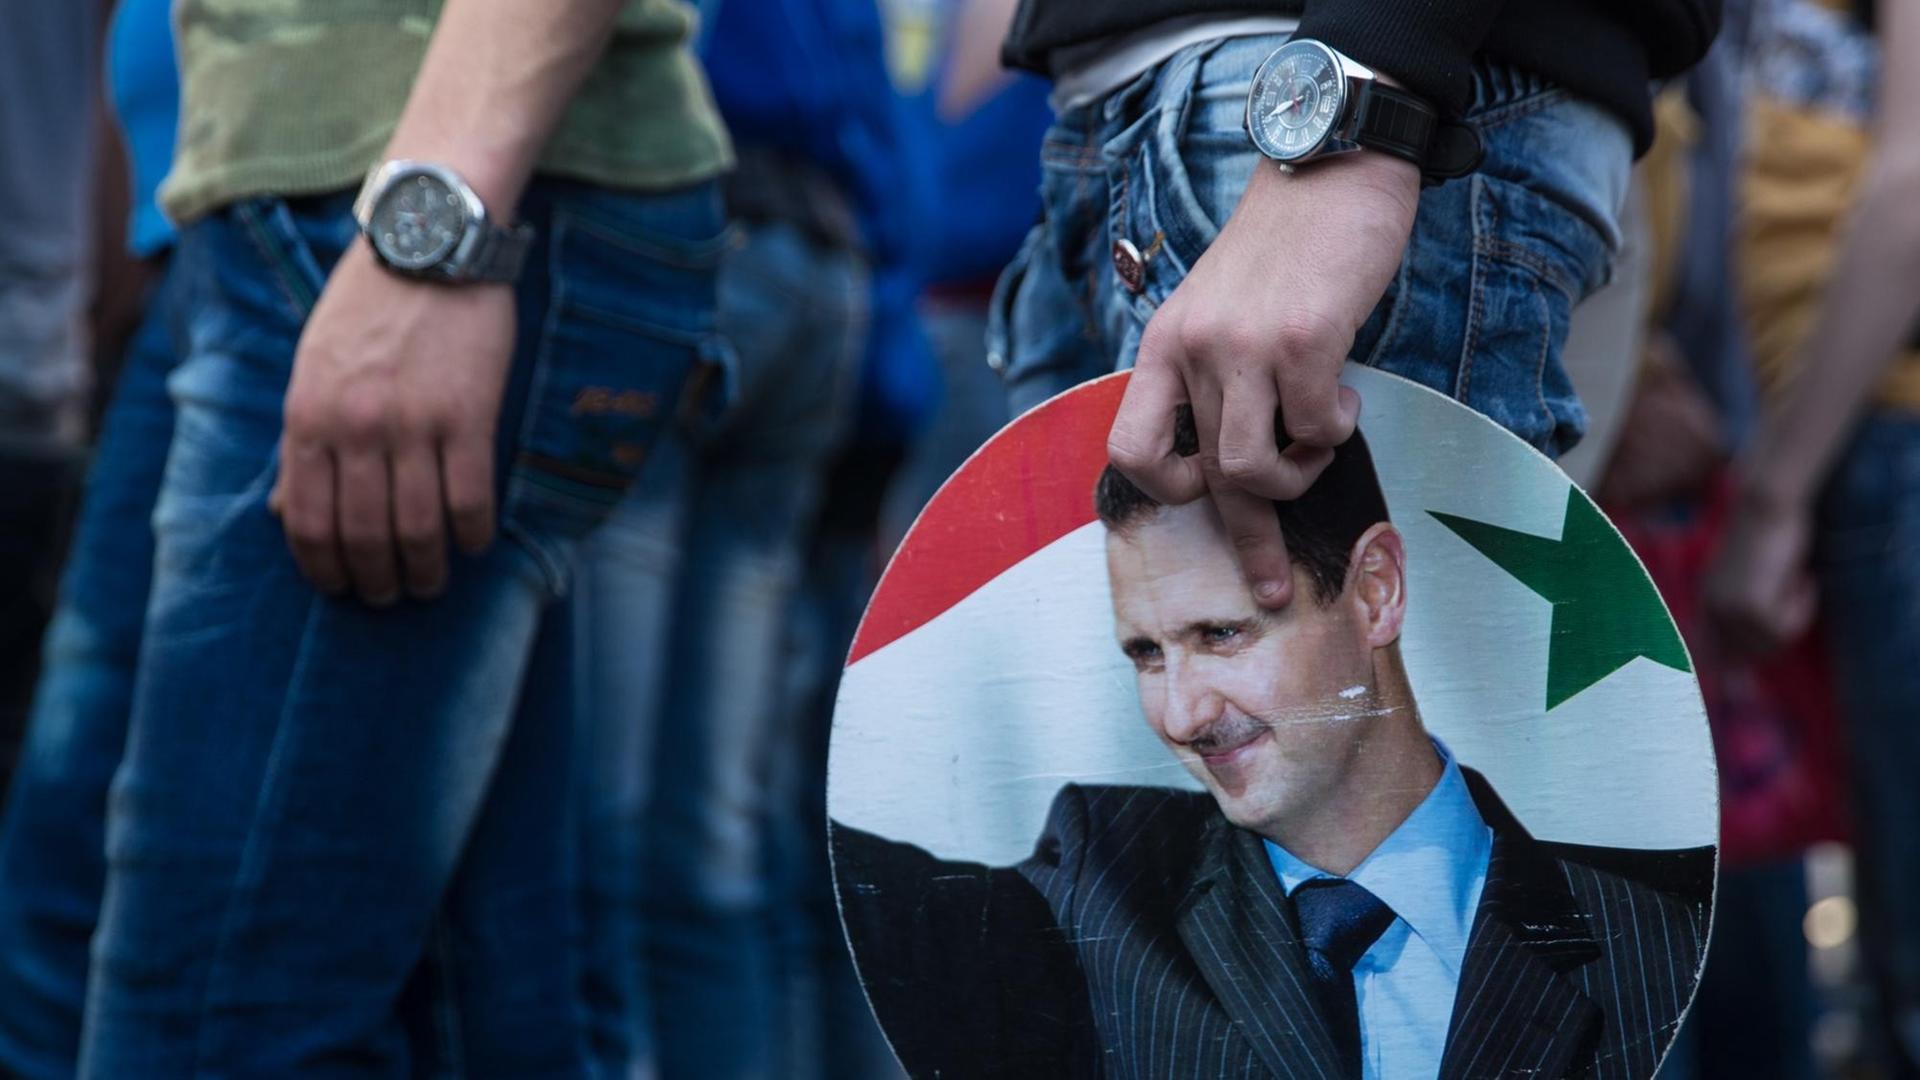 Demonstranten in Latakia bei einer Kundgebung für das Regime Assad, ein Schild mit seinem Konterfei in der Hand